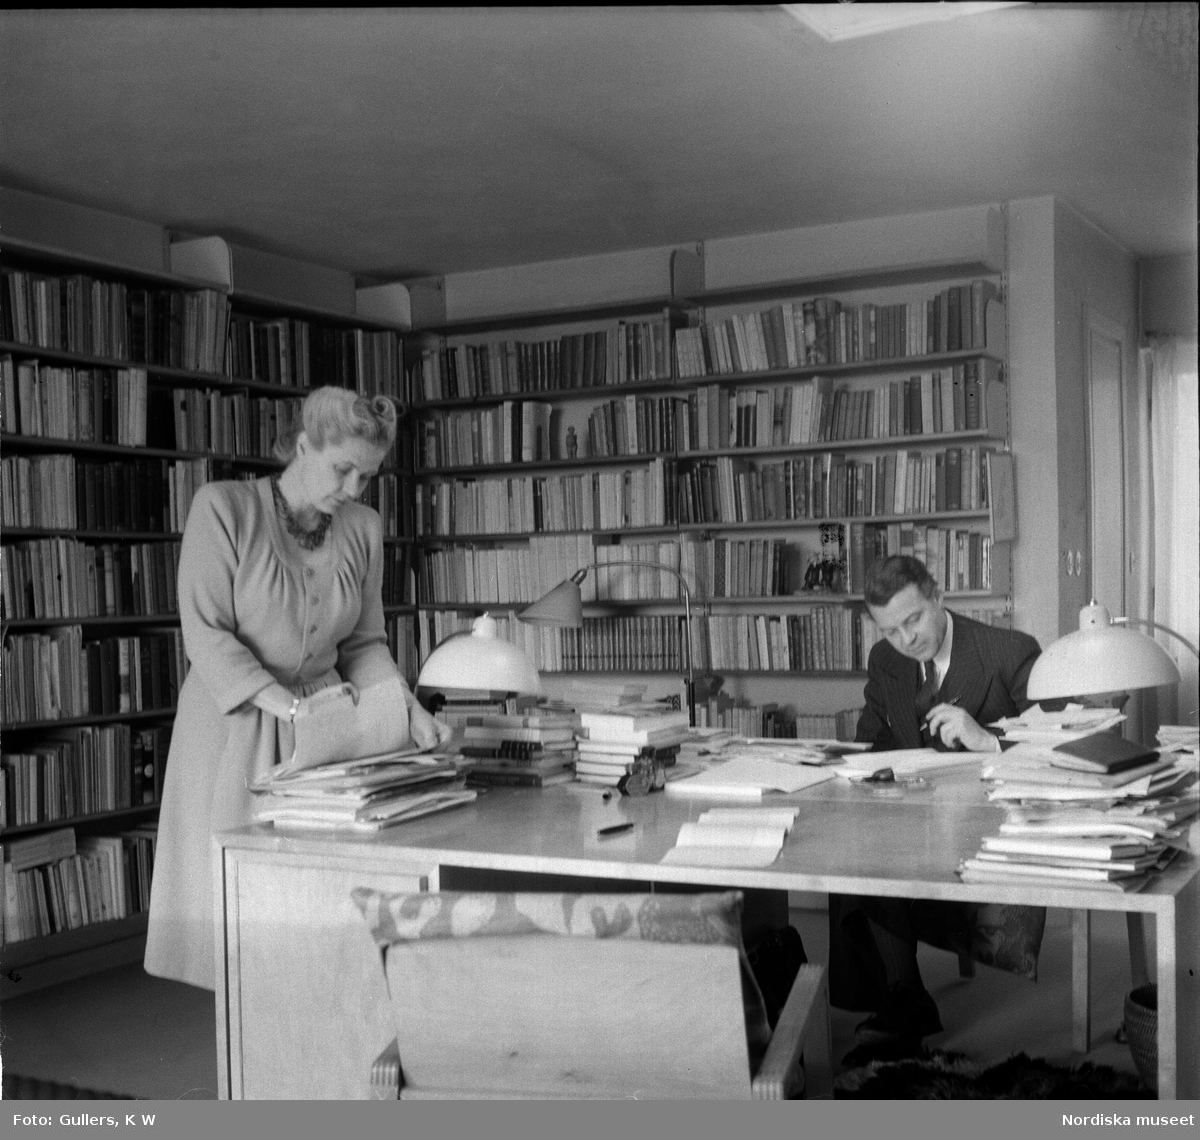 Alva och Gunnar Myrdal i arbetsrum.